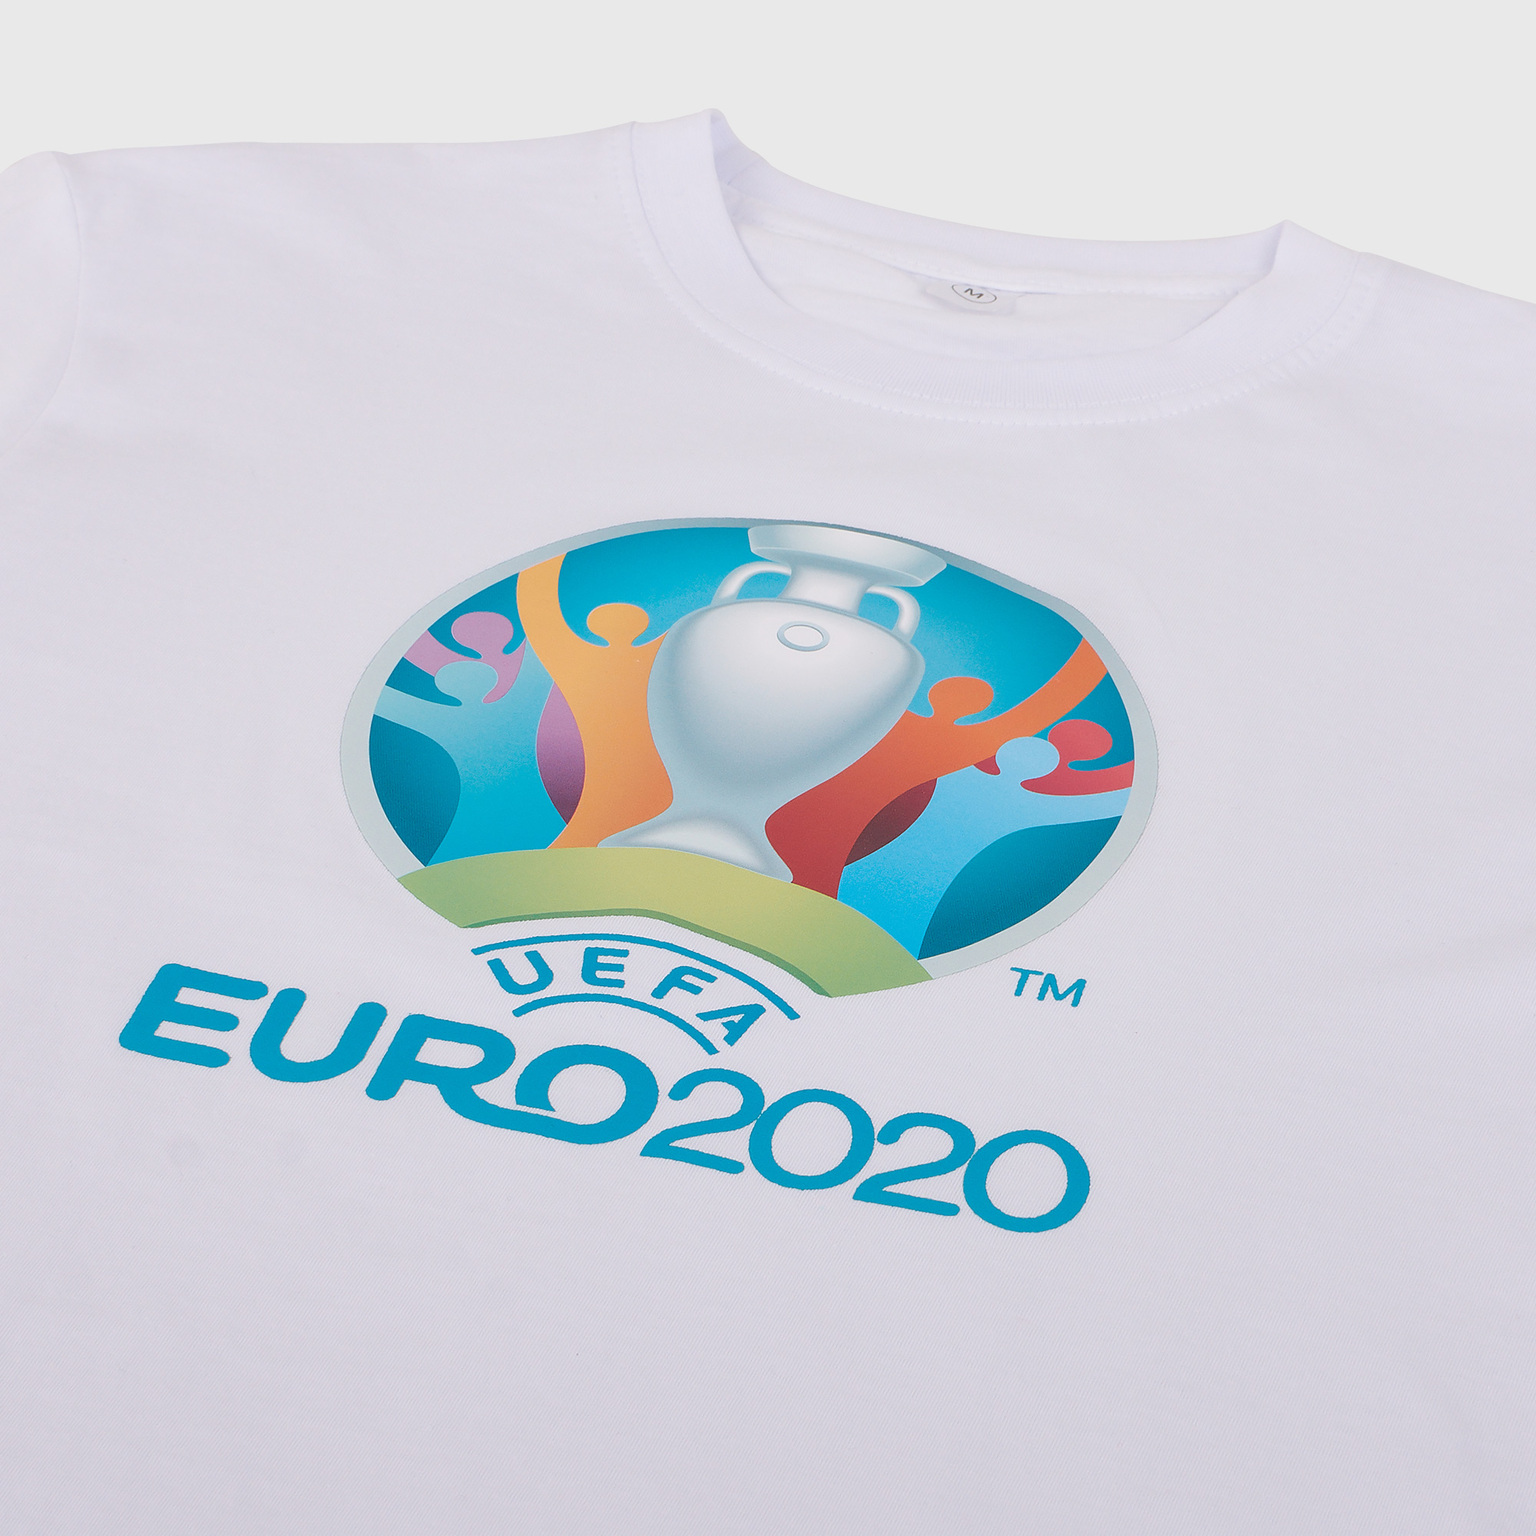 Футболка хлопковая Euro 2020 "Эмблема"